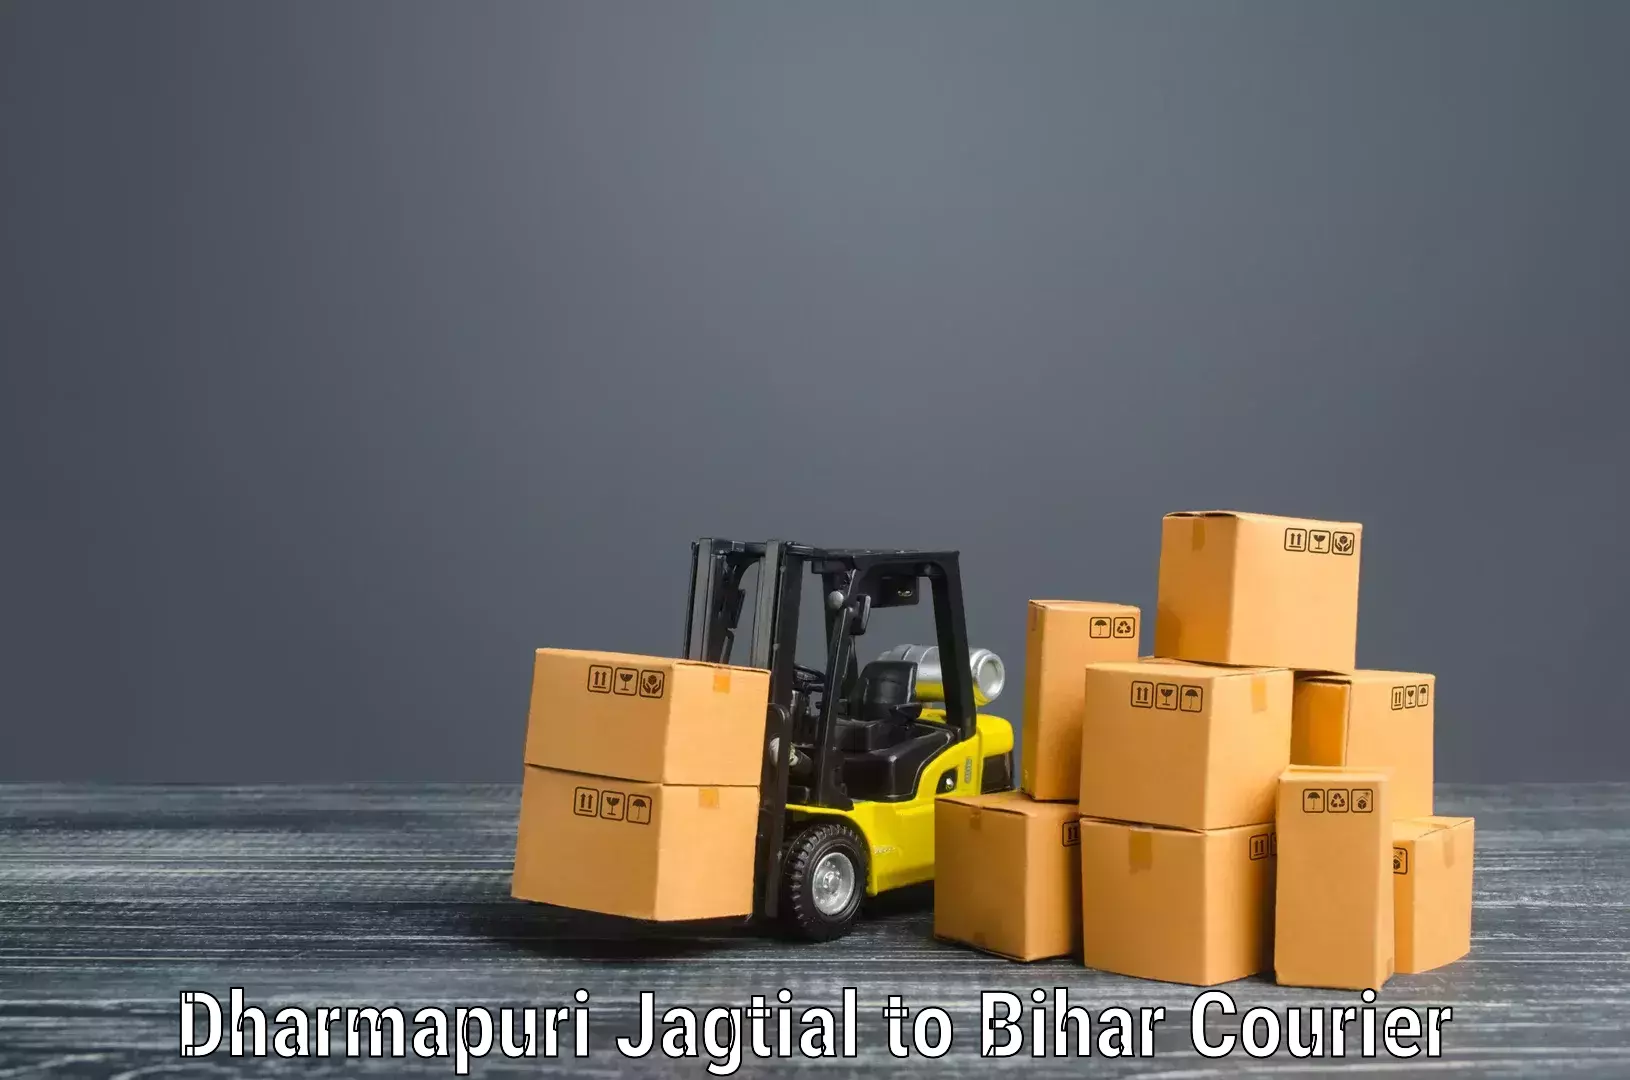 Household moving and storage in Dharmapuri Jagtial to Dholi Moraul